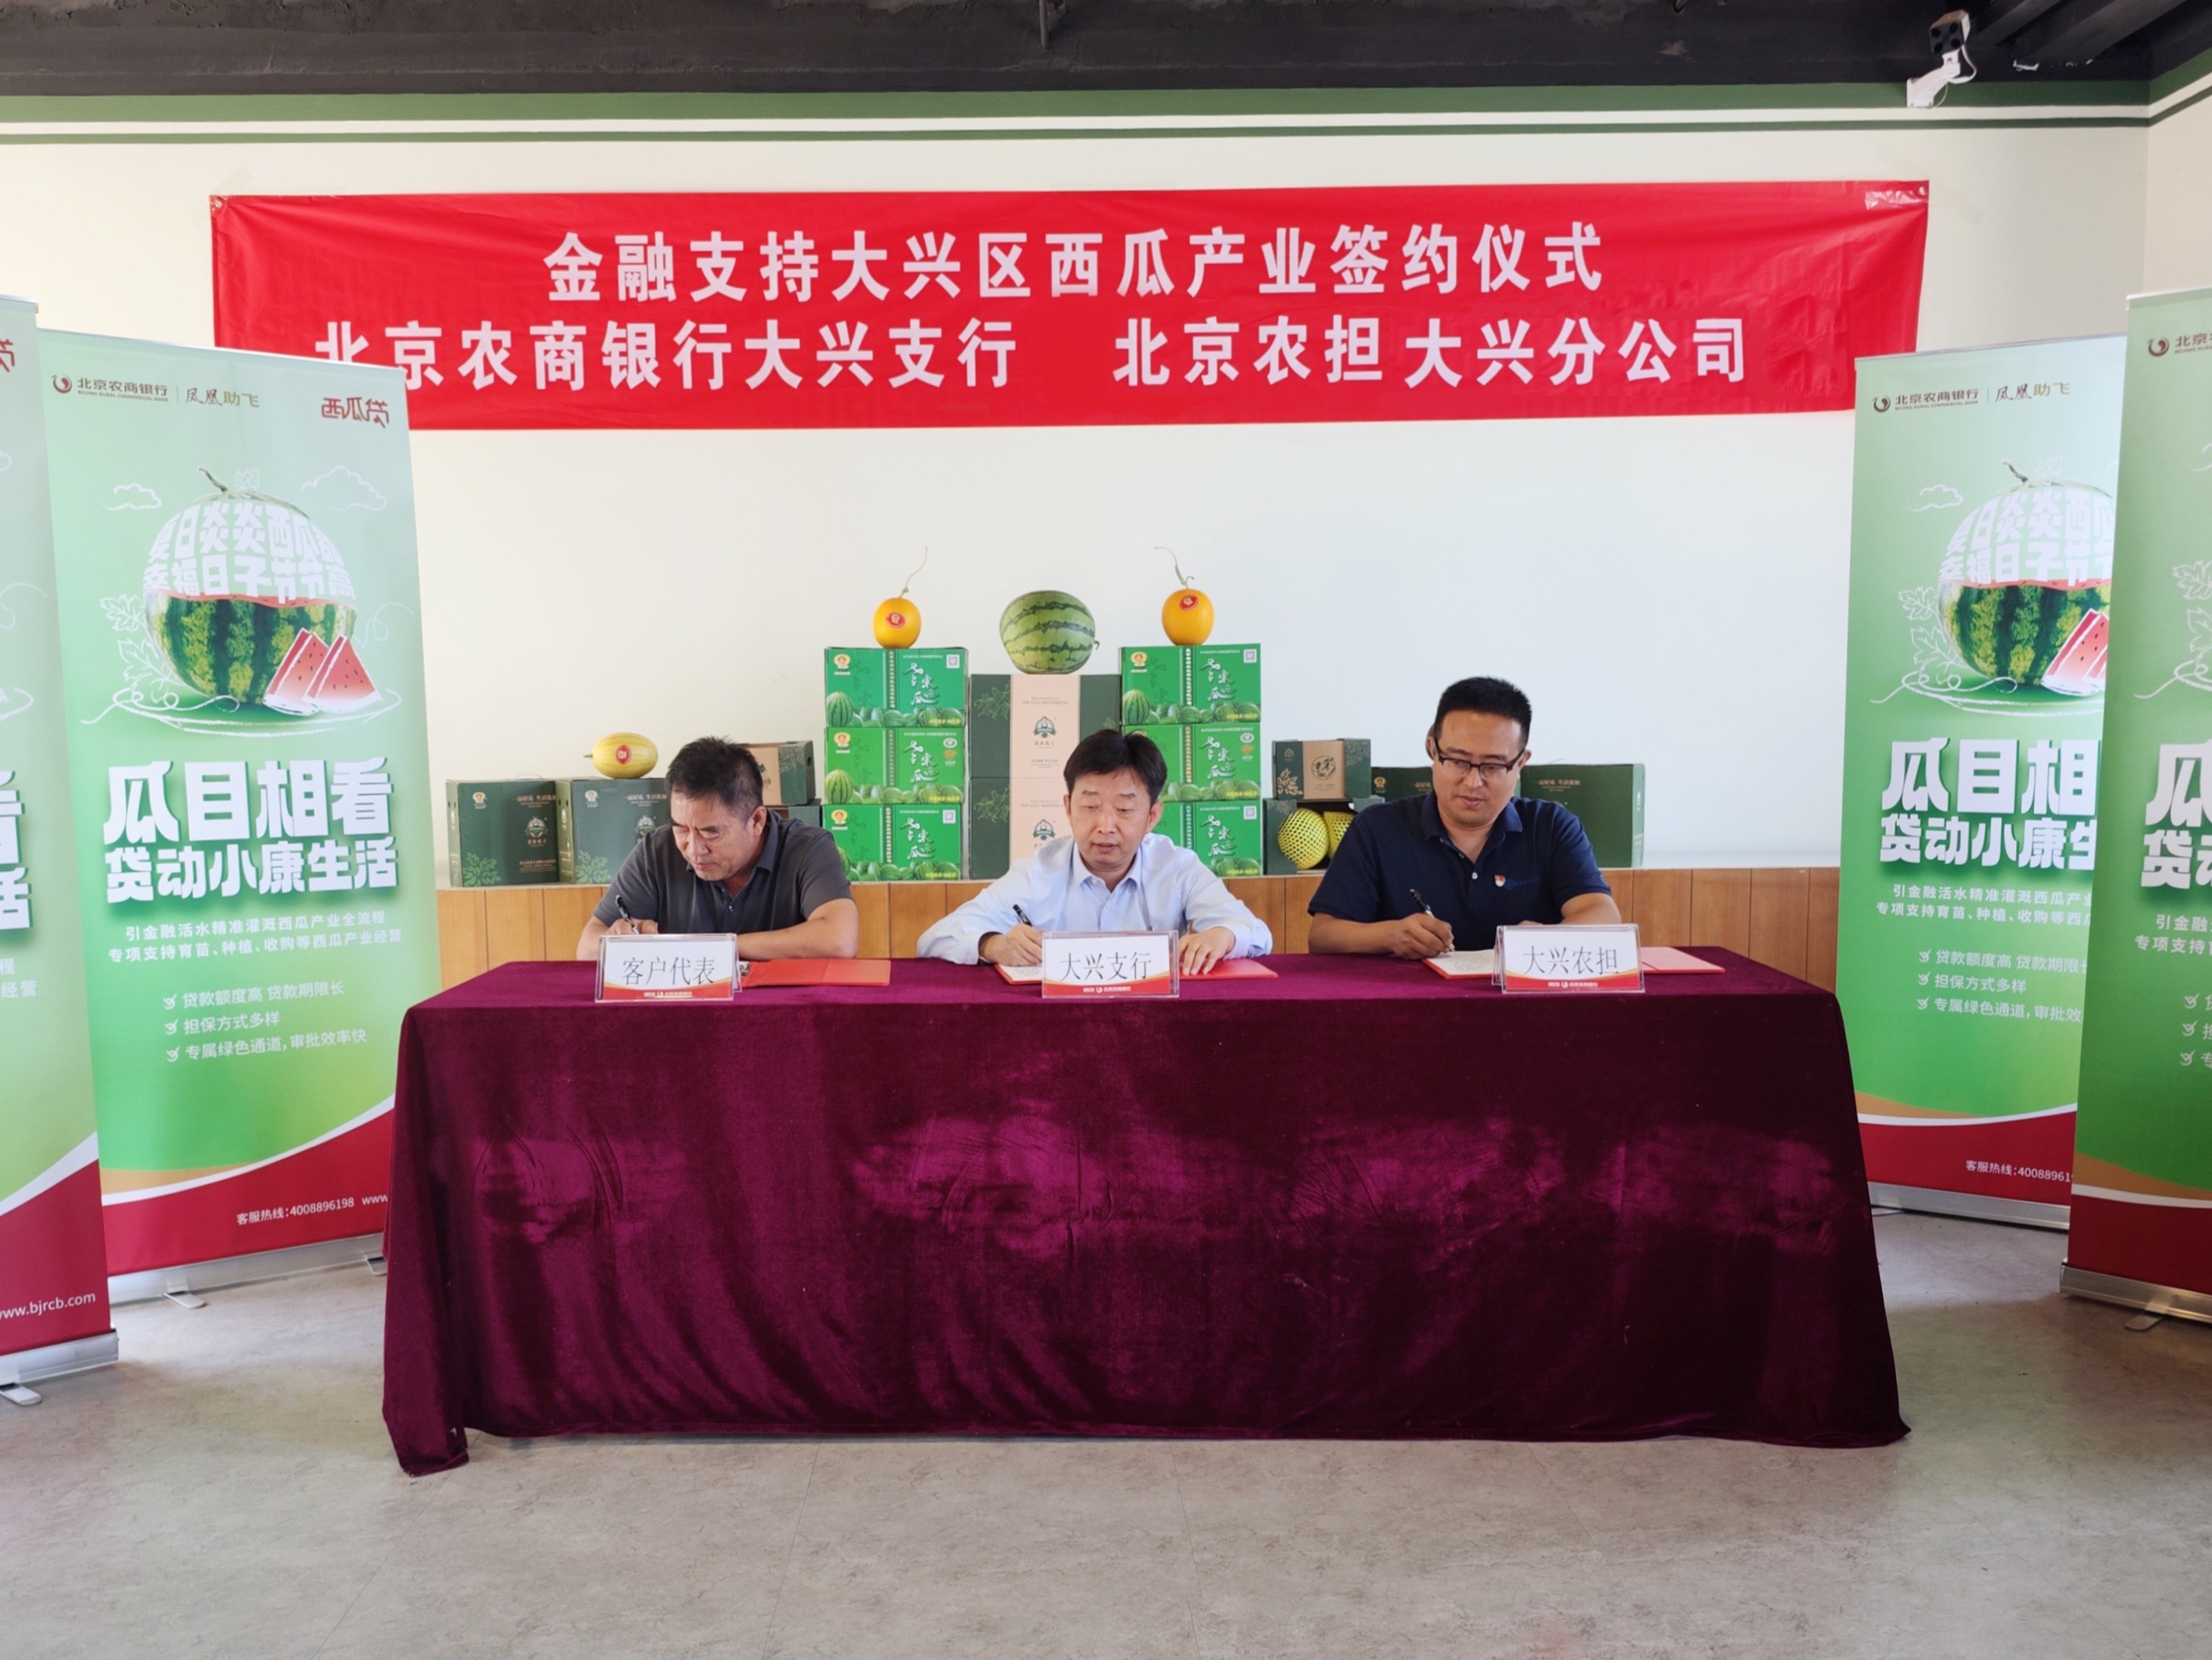 北京农商银行创新推出西瓜贷引金融活水精准滴灌西瓜产业全流程